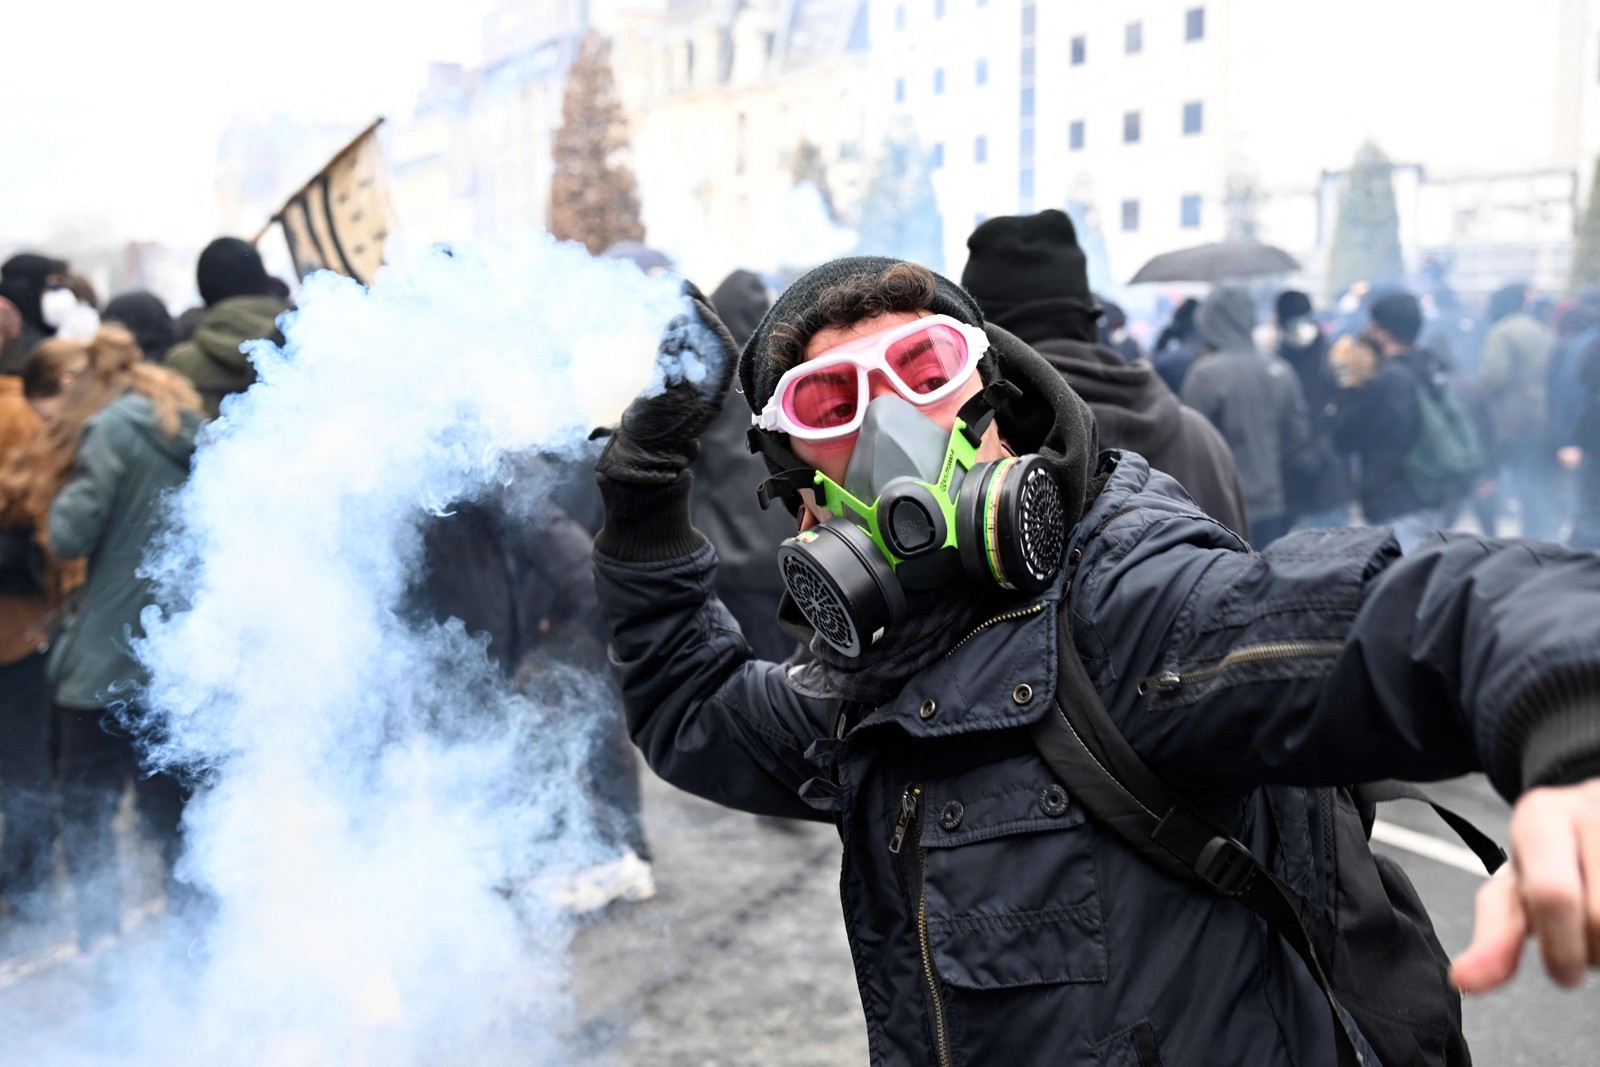 Manifestante joga uma granada de gás lacrimogêneo contra a polícia de choque durante uma manifestação em Rennes, oeste da França — Foto: DAMIEN MEYER / AFP